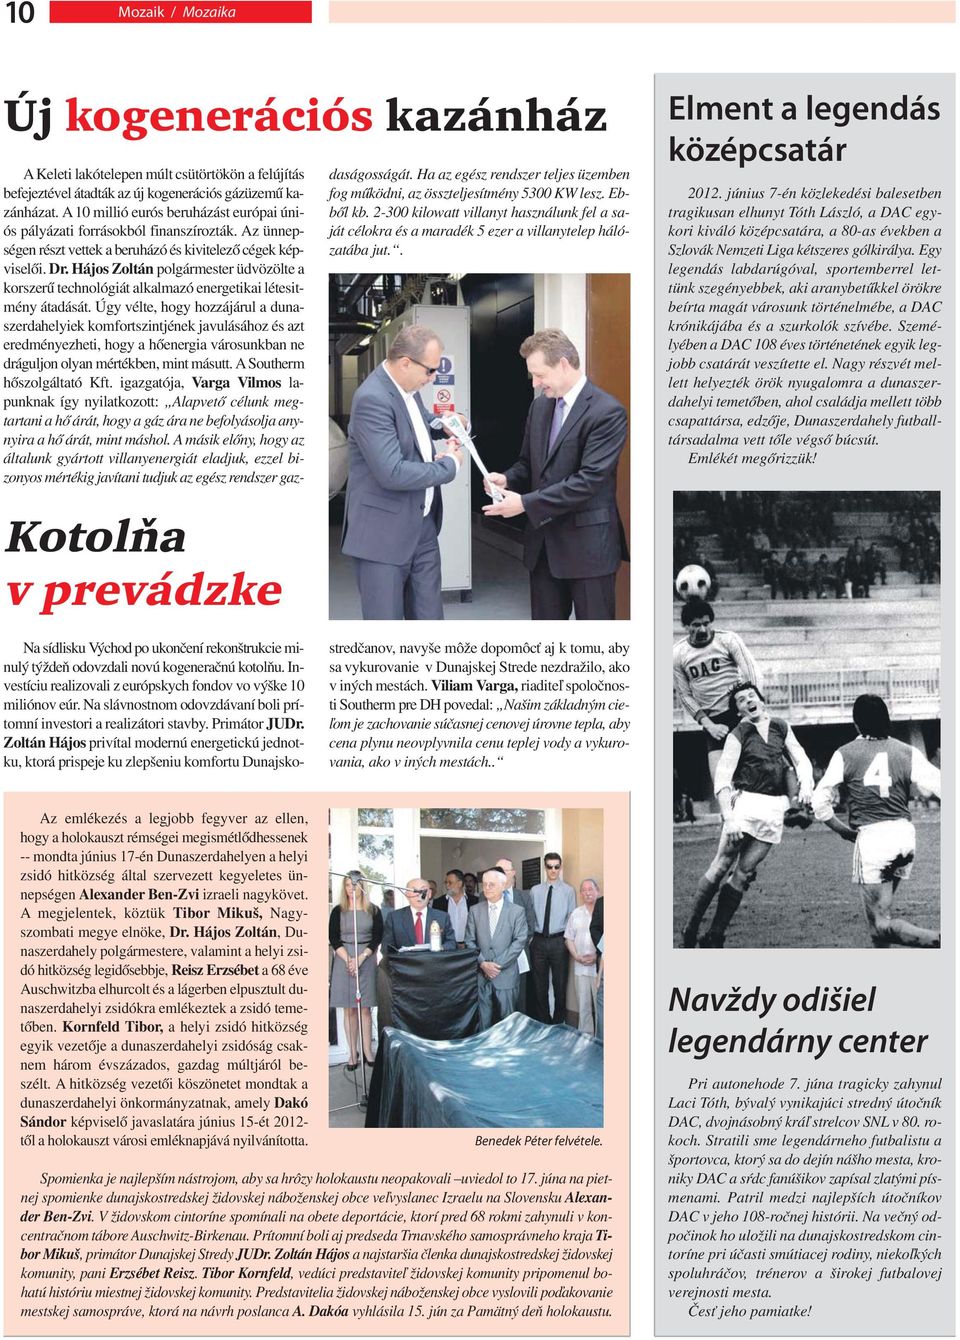 Hájos Zoltán polgármester üdvözölte a korszerű technológiát alkalmazó energetikai létesitmény átadását.